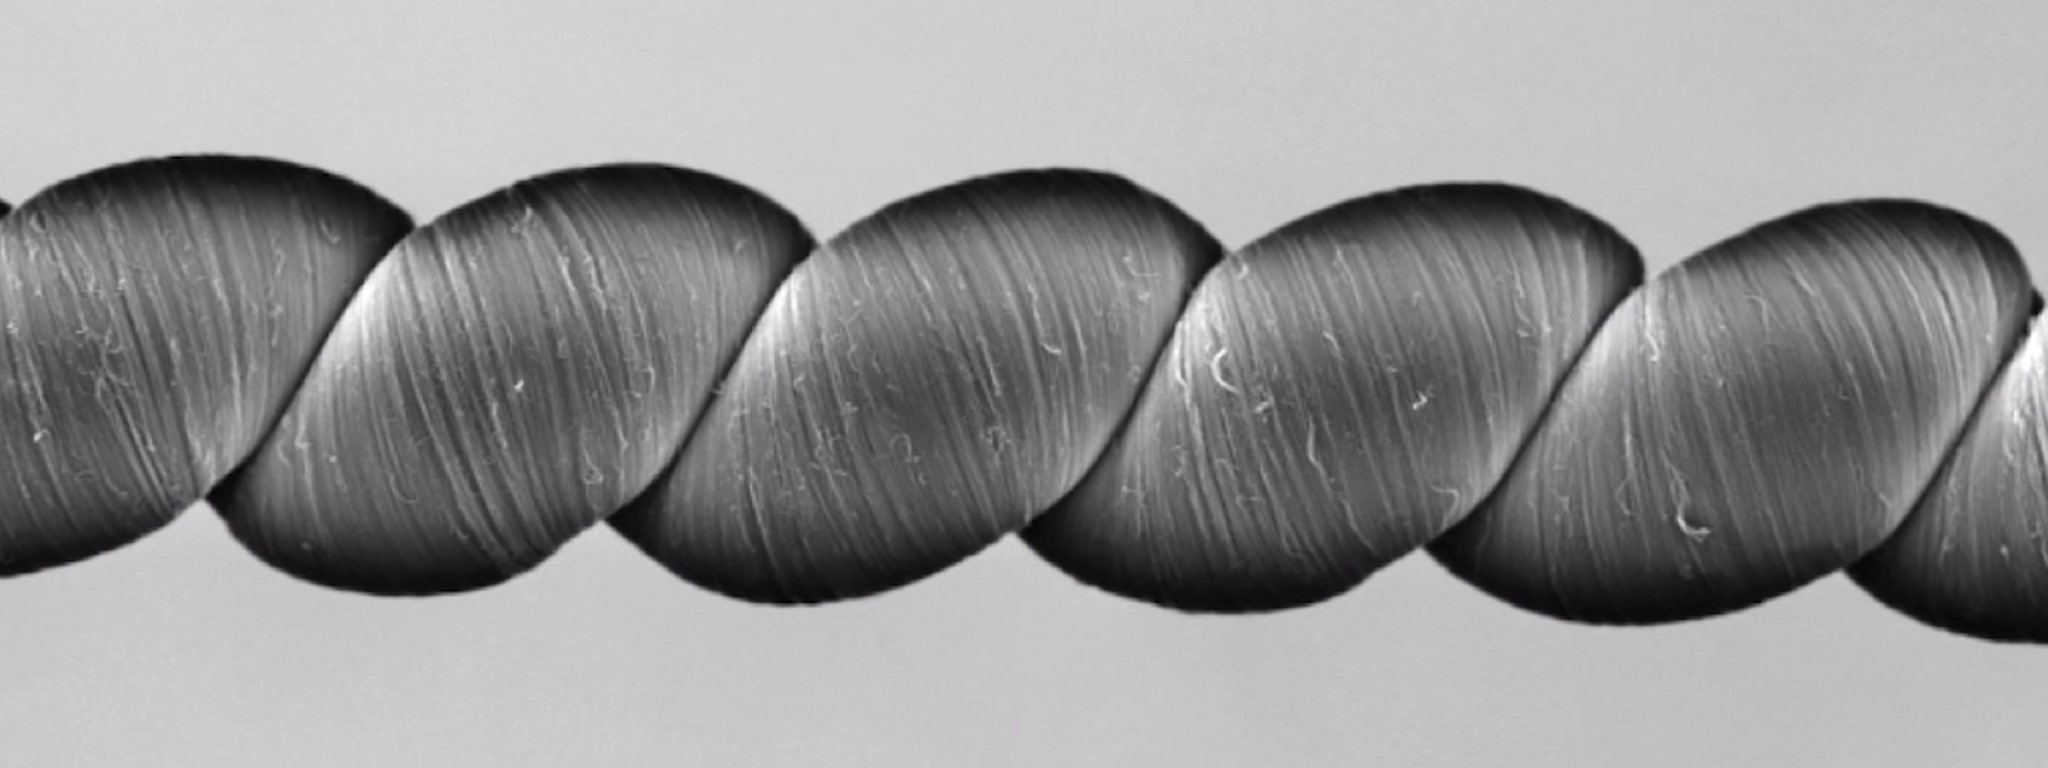 Twistron - sợi chỉ nano carbon sinh điện khi kéo dãn, 1 kg sợi chỉ cho 250 W